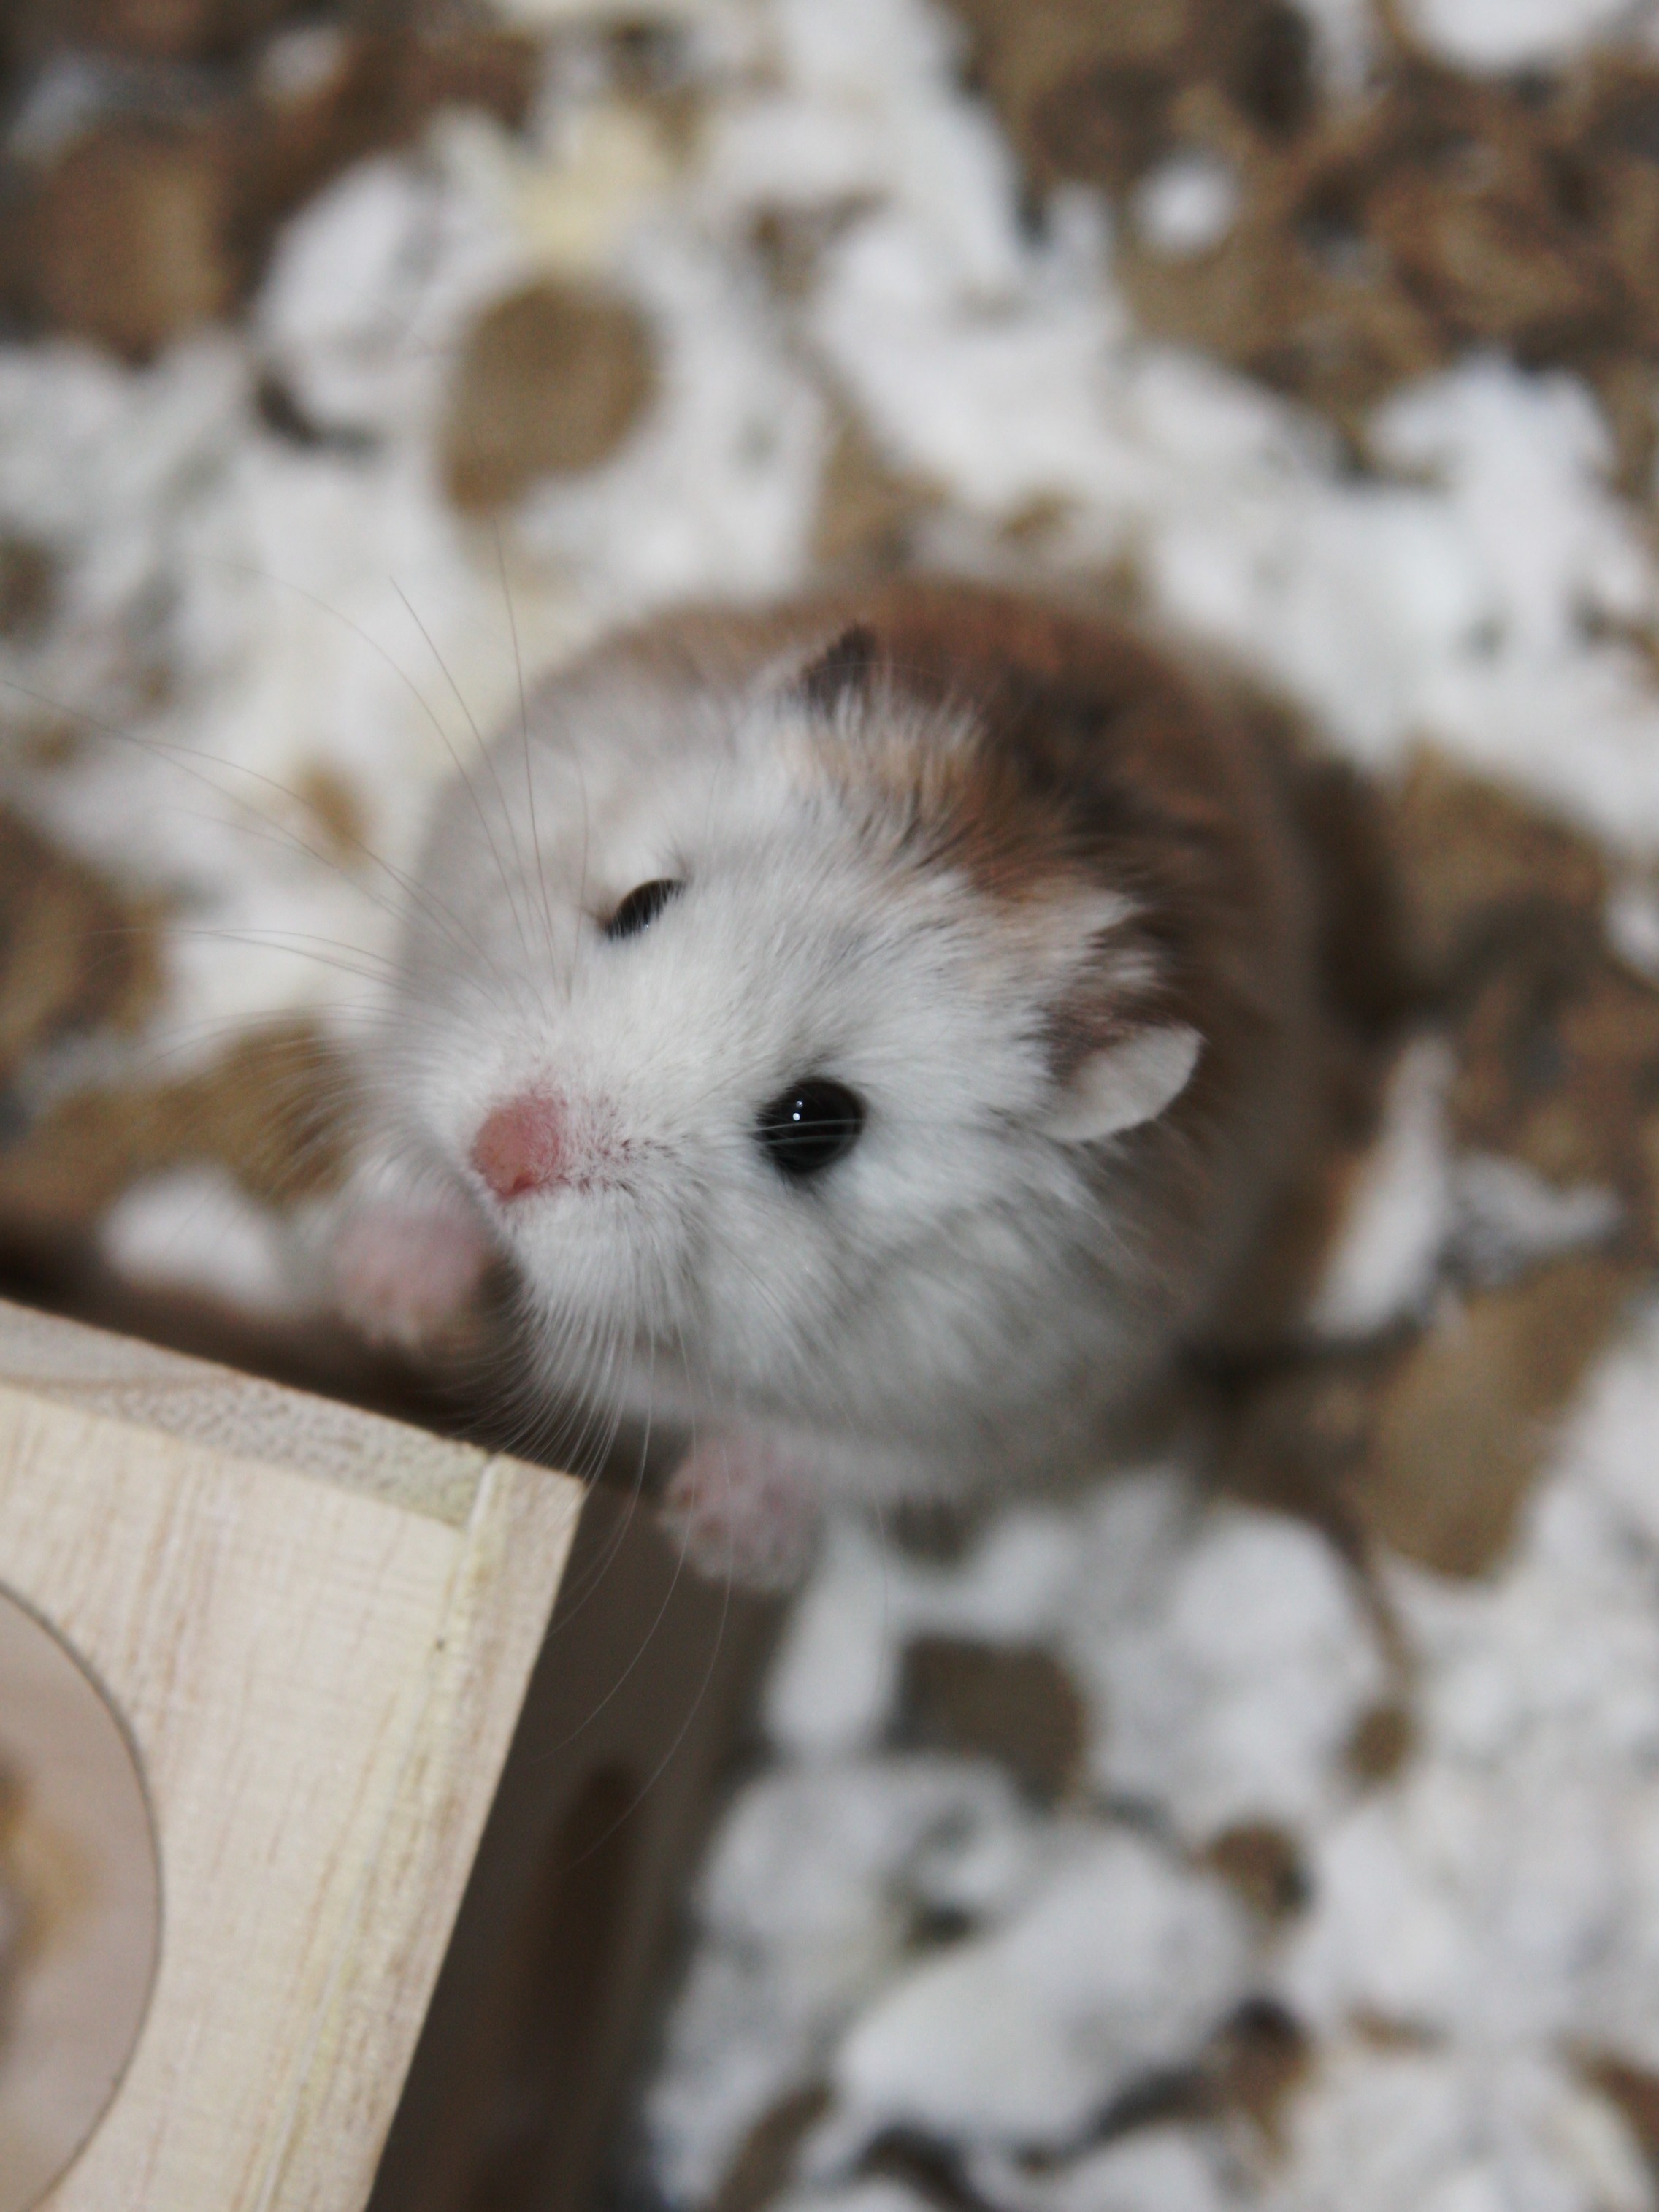 animals, hamsters - desktop wallpaper